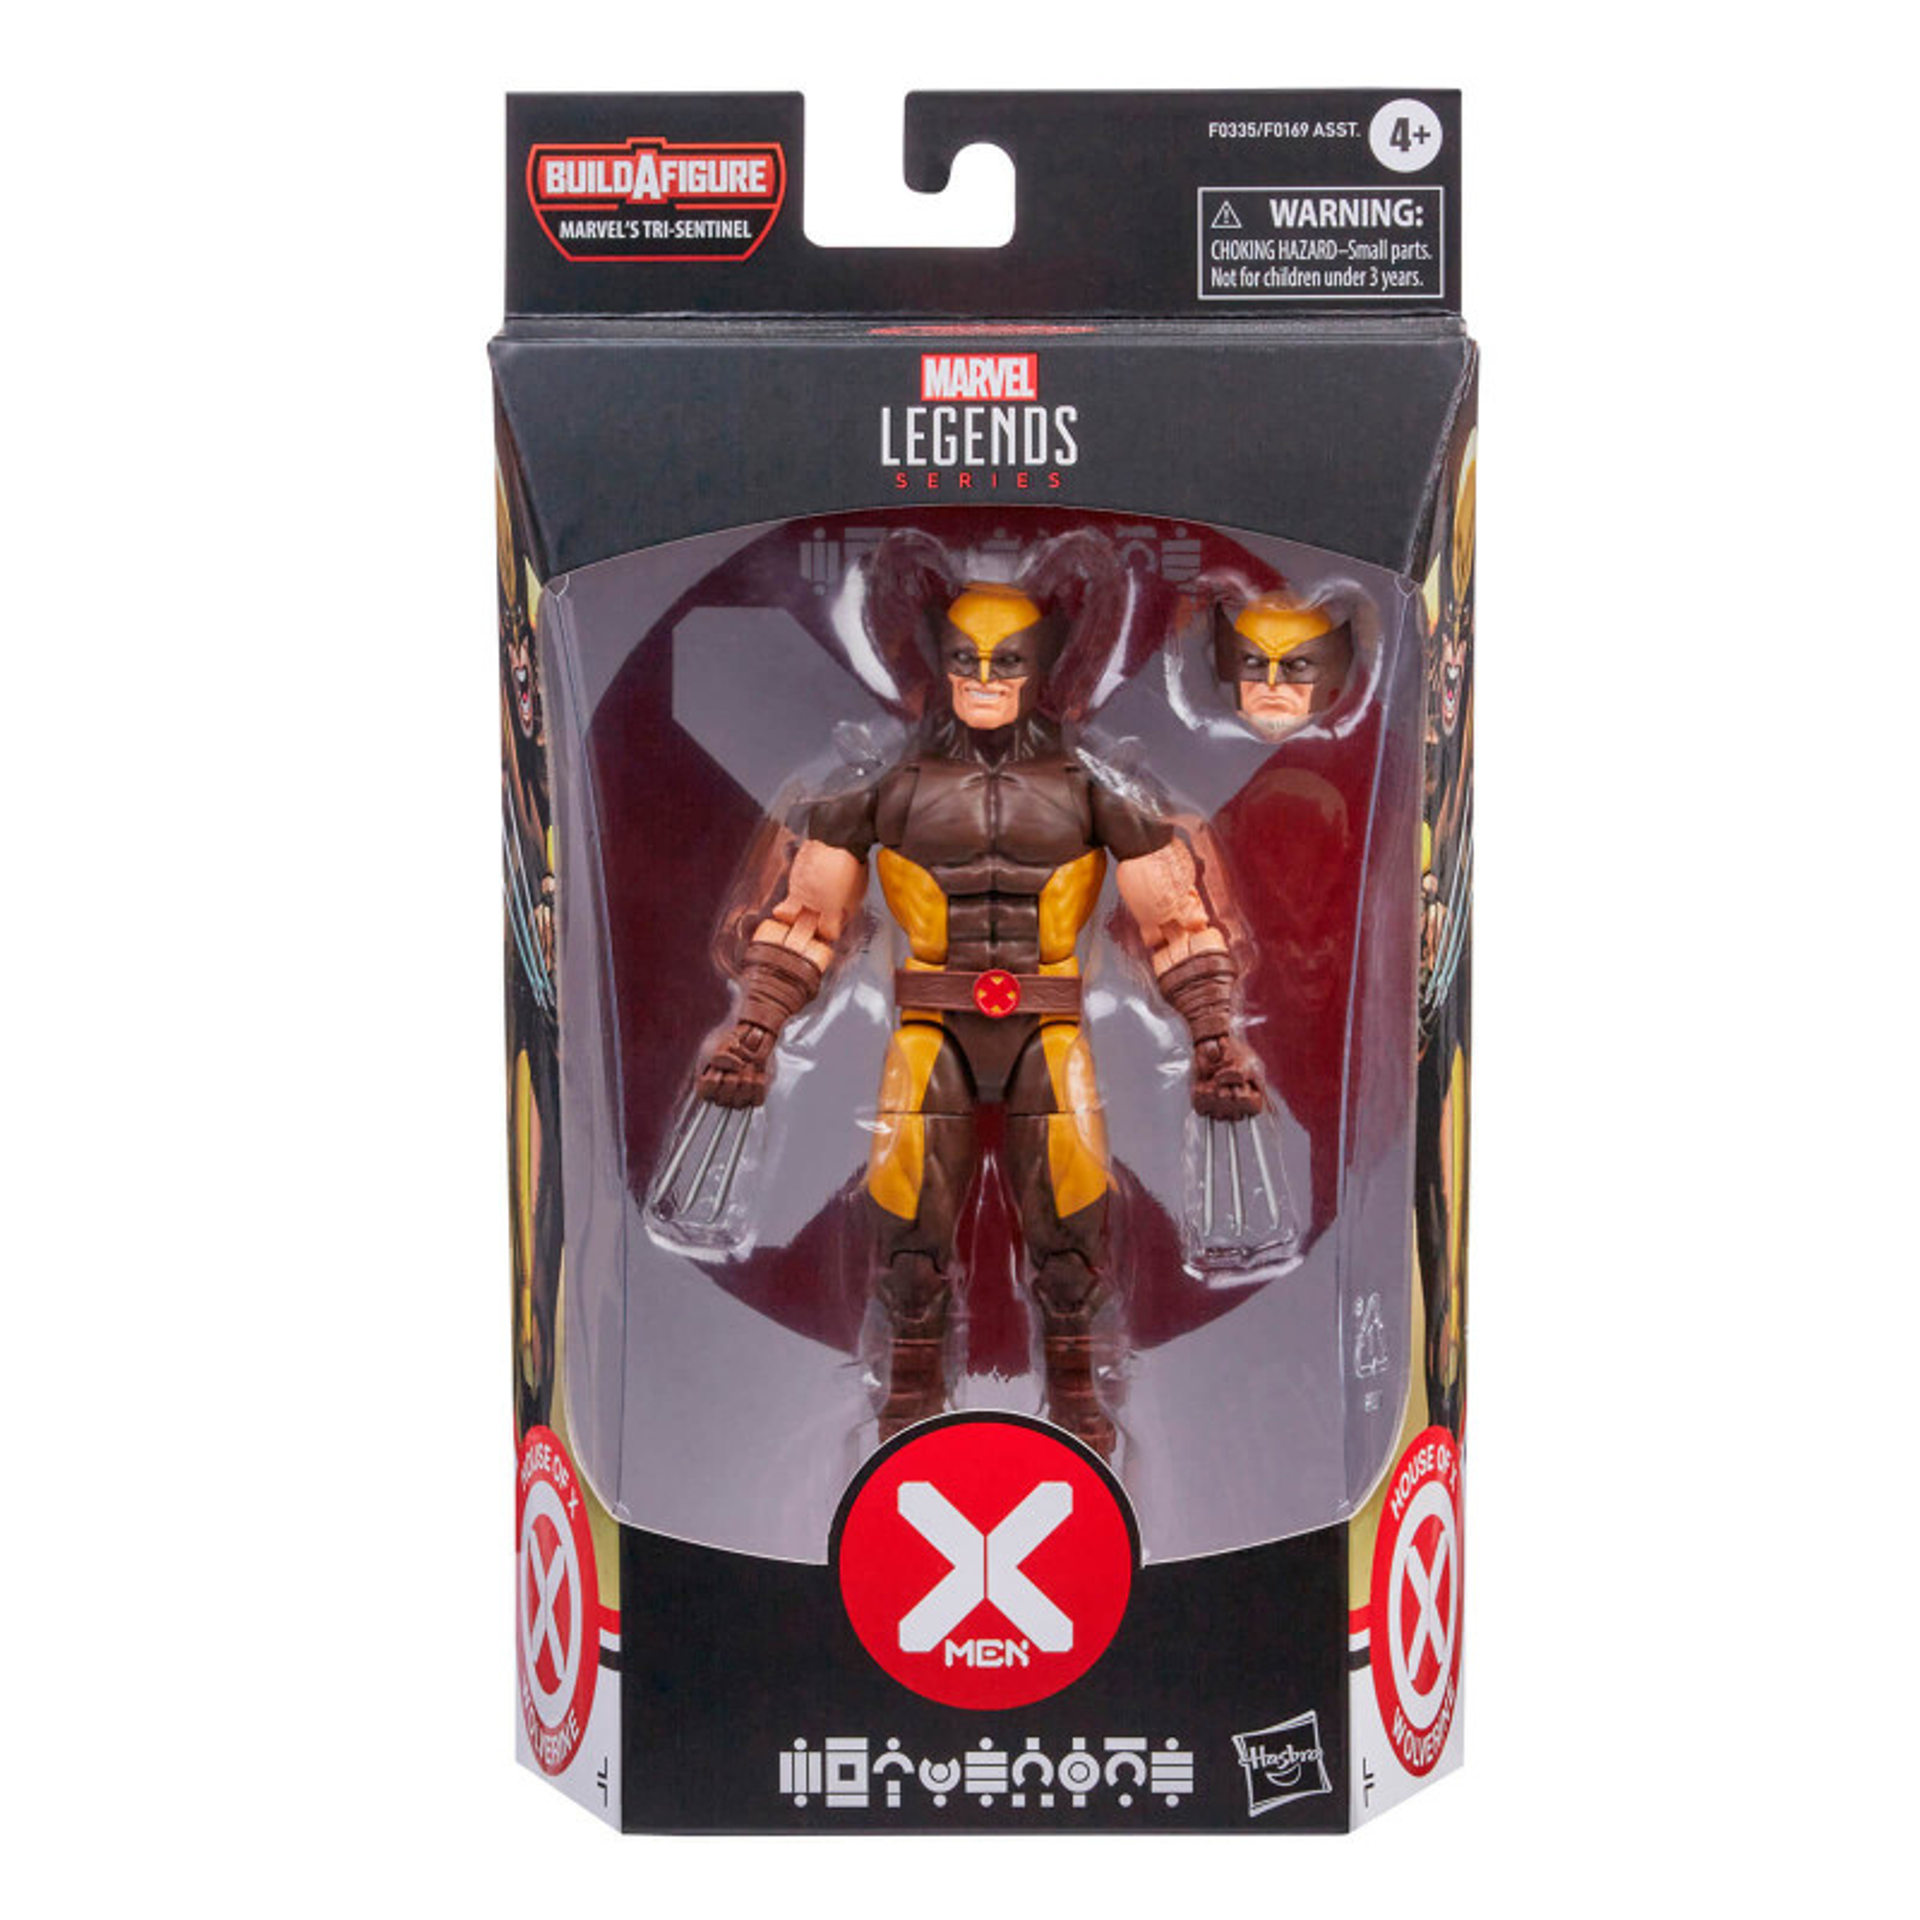 Marvel Legends Series - Build-A-Figure Série Marvel's Tri-Sentinel - X-Men House of X Figurine d'action de Wolverine 15cm